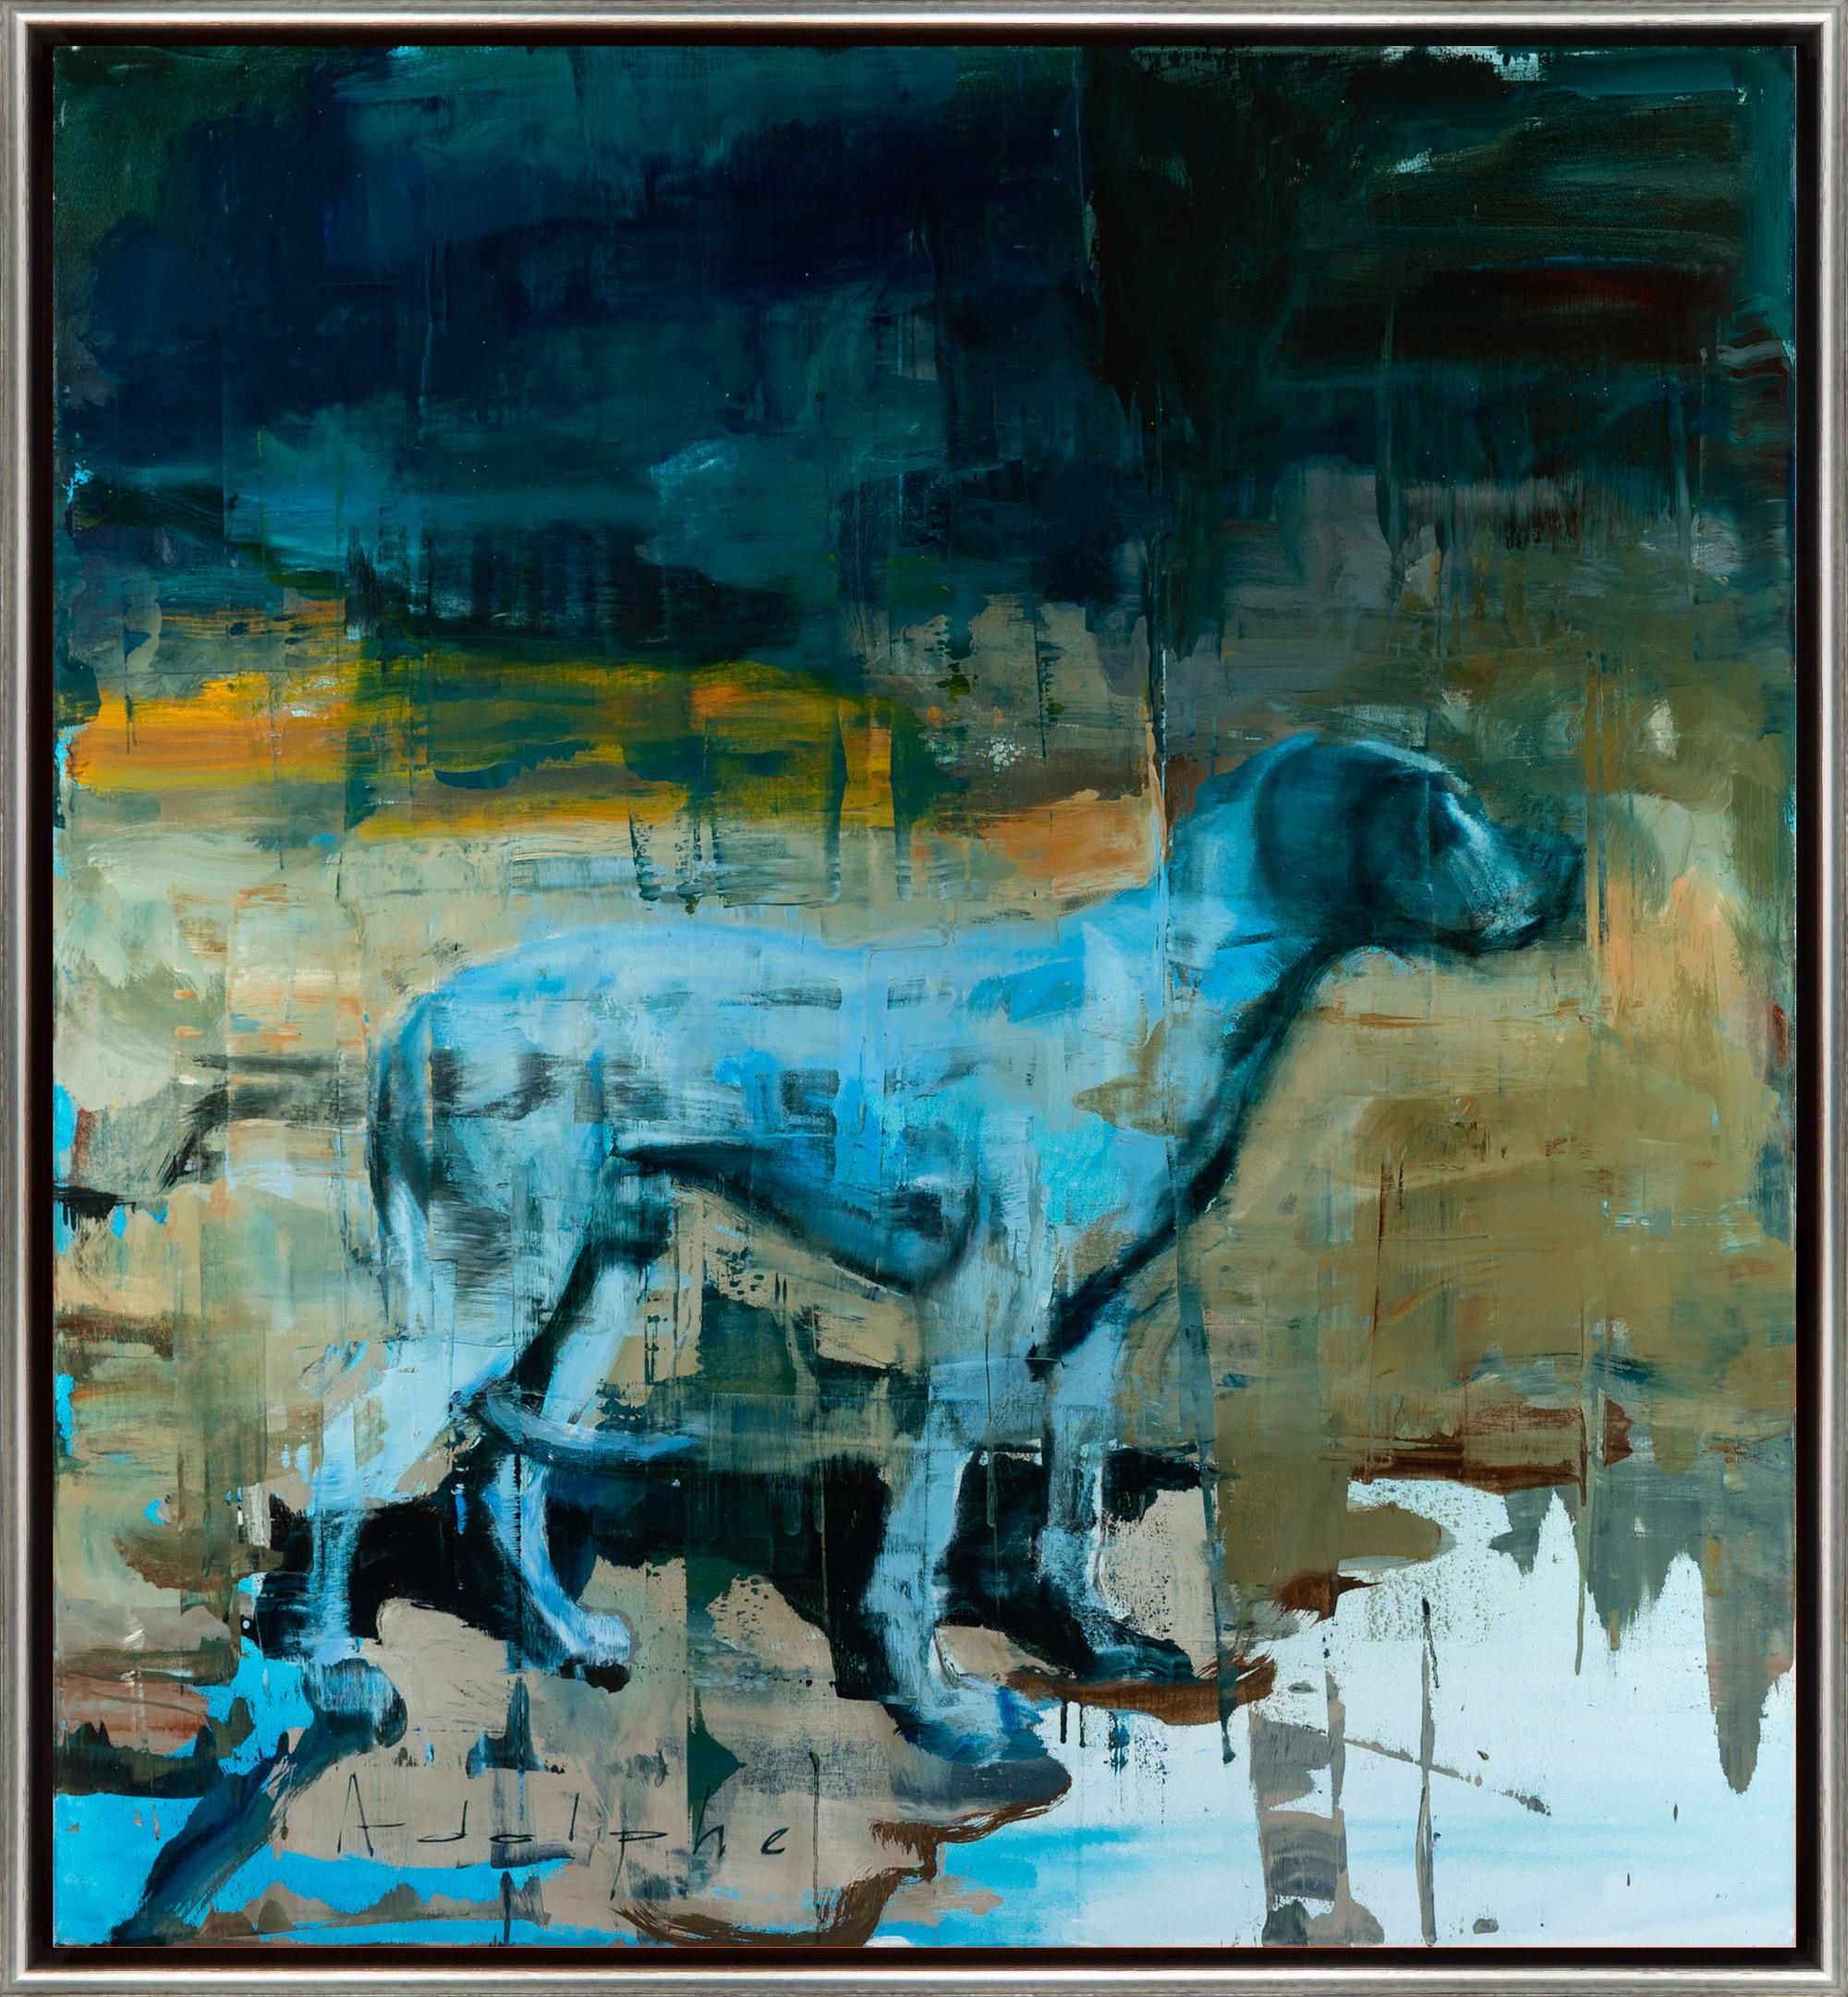 Abstract Painting Joseph Adolphe - "The Entrance" Peinture abstraite à l'huile sur toile représentant un chien